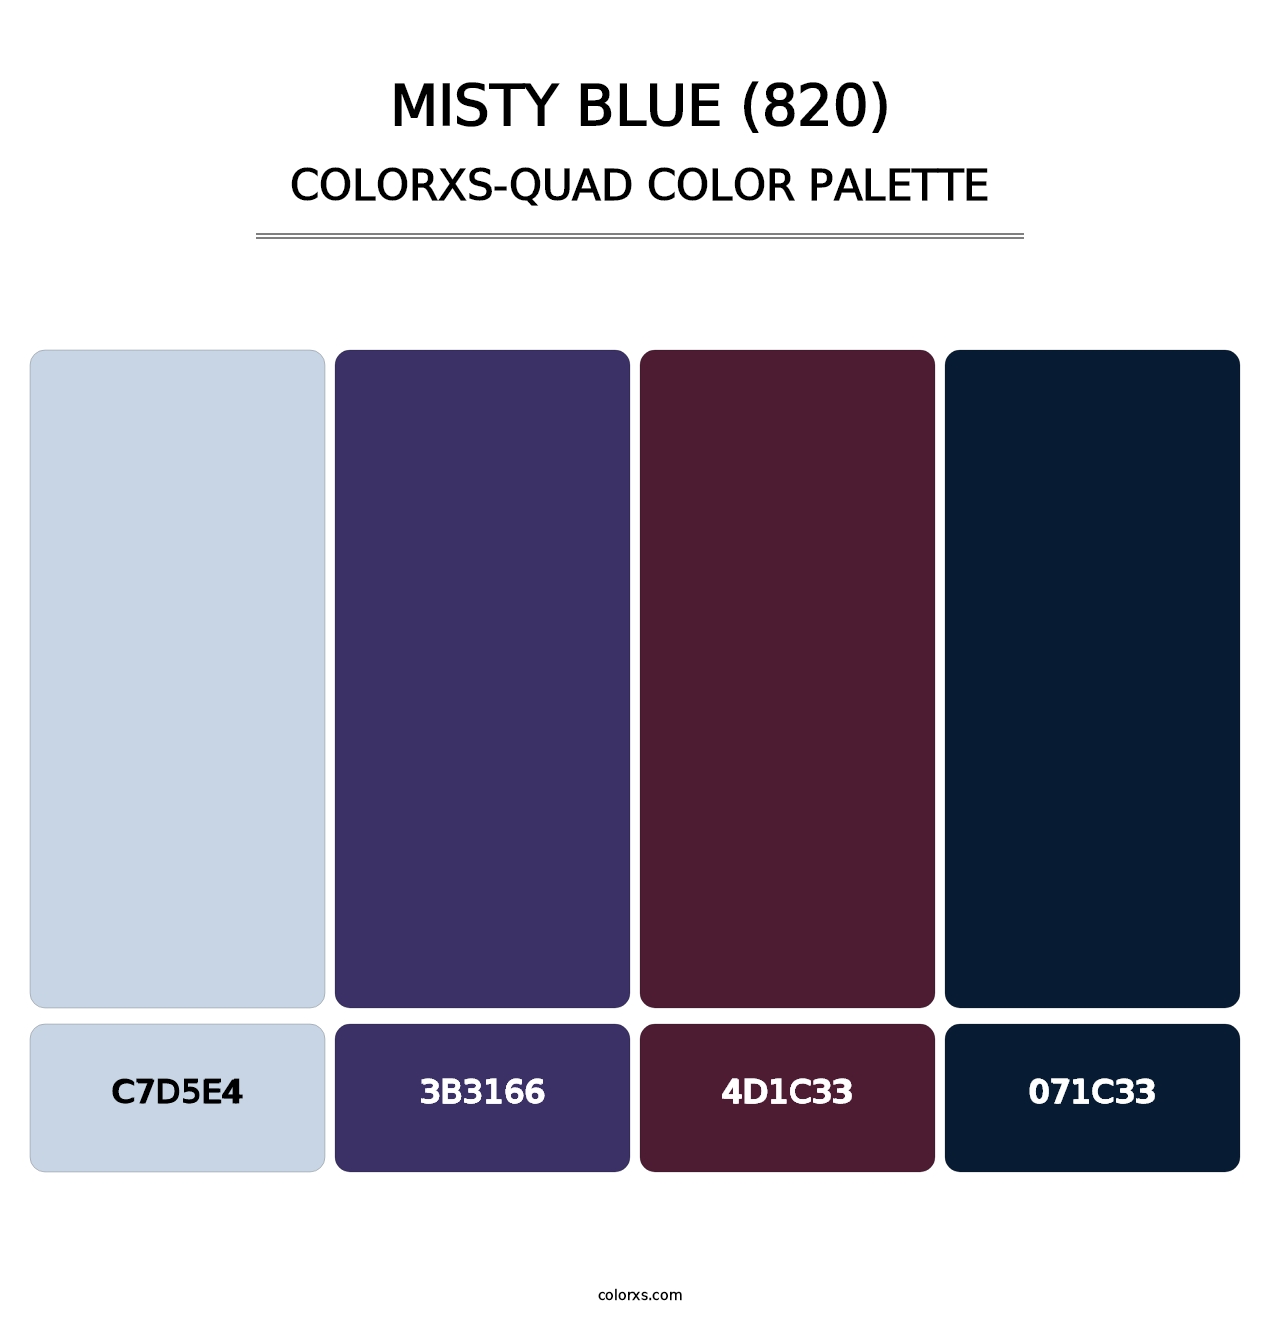 Misty Blue (820) - Colorxs Quad Palette